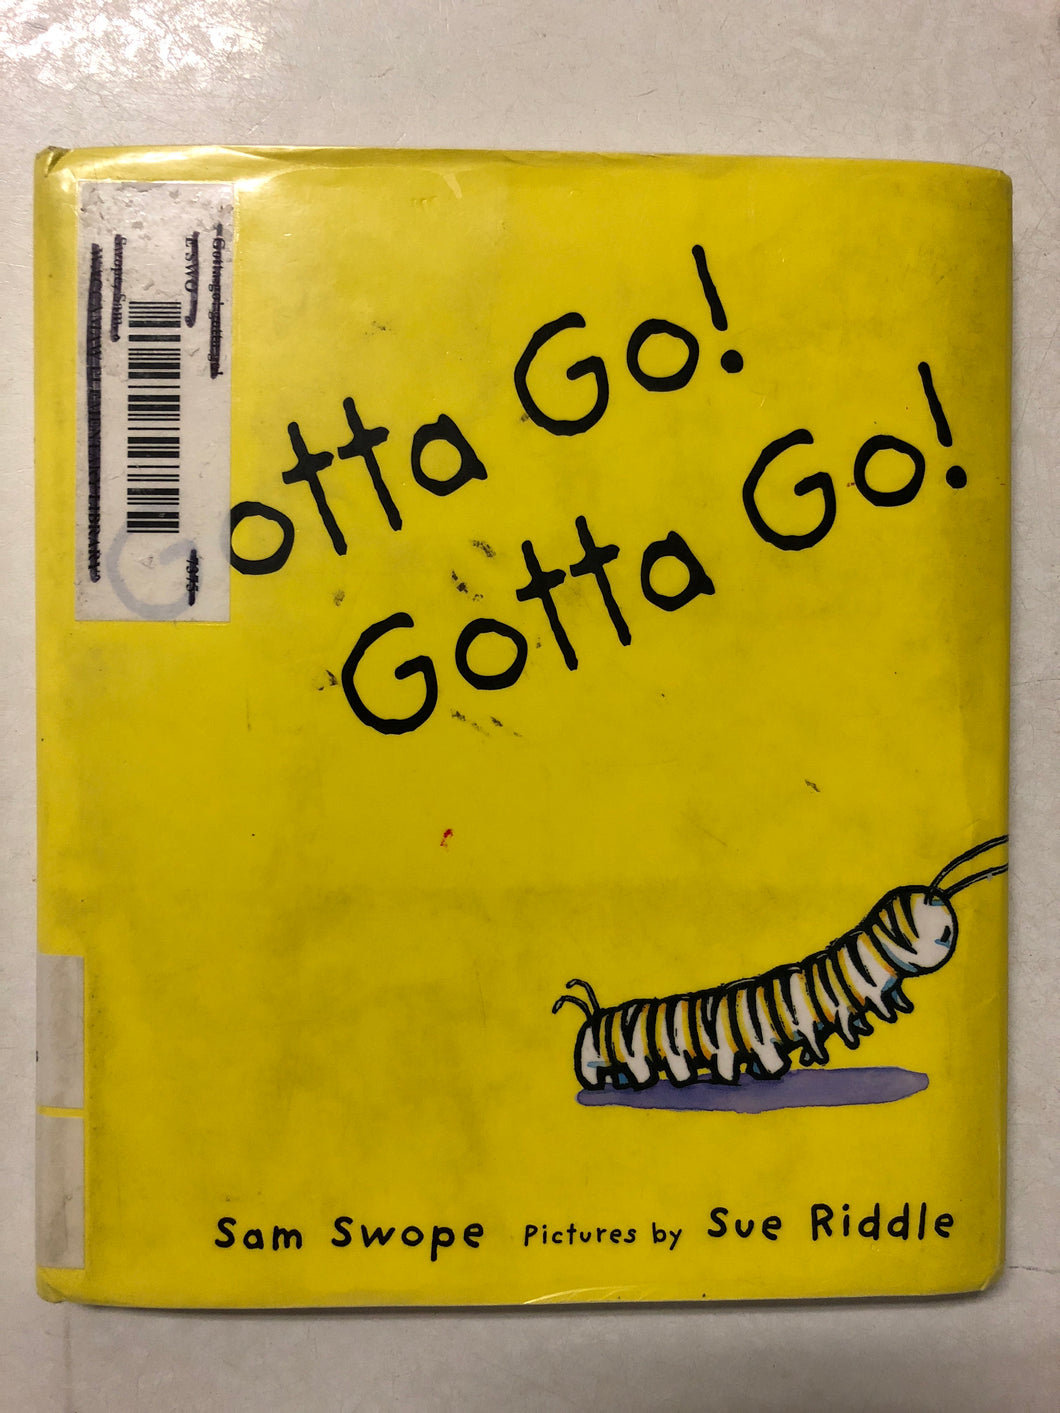 Gotta Go! Gotta Go! - Slick Cat Books 